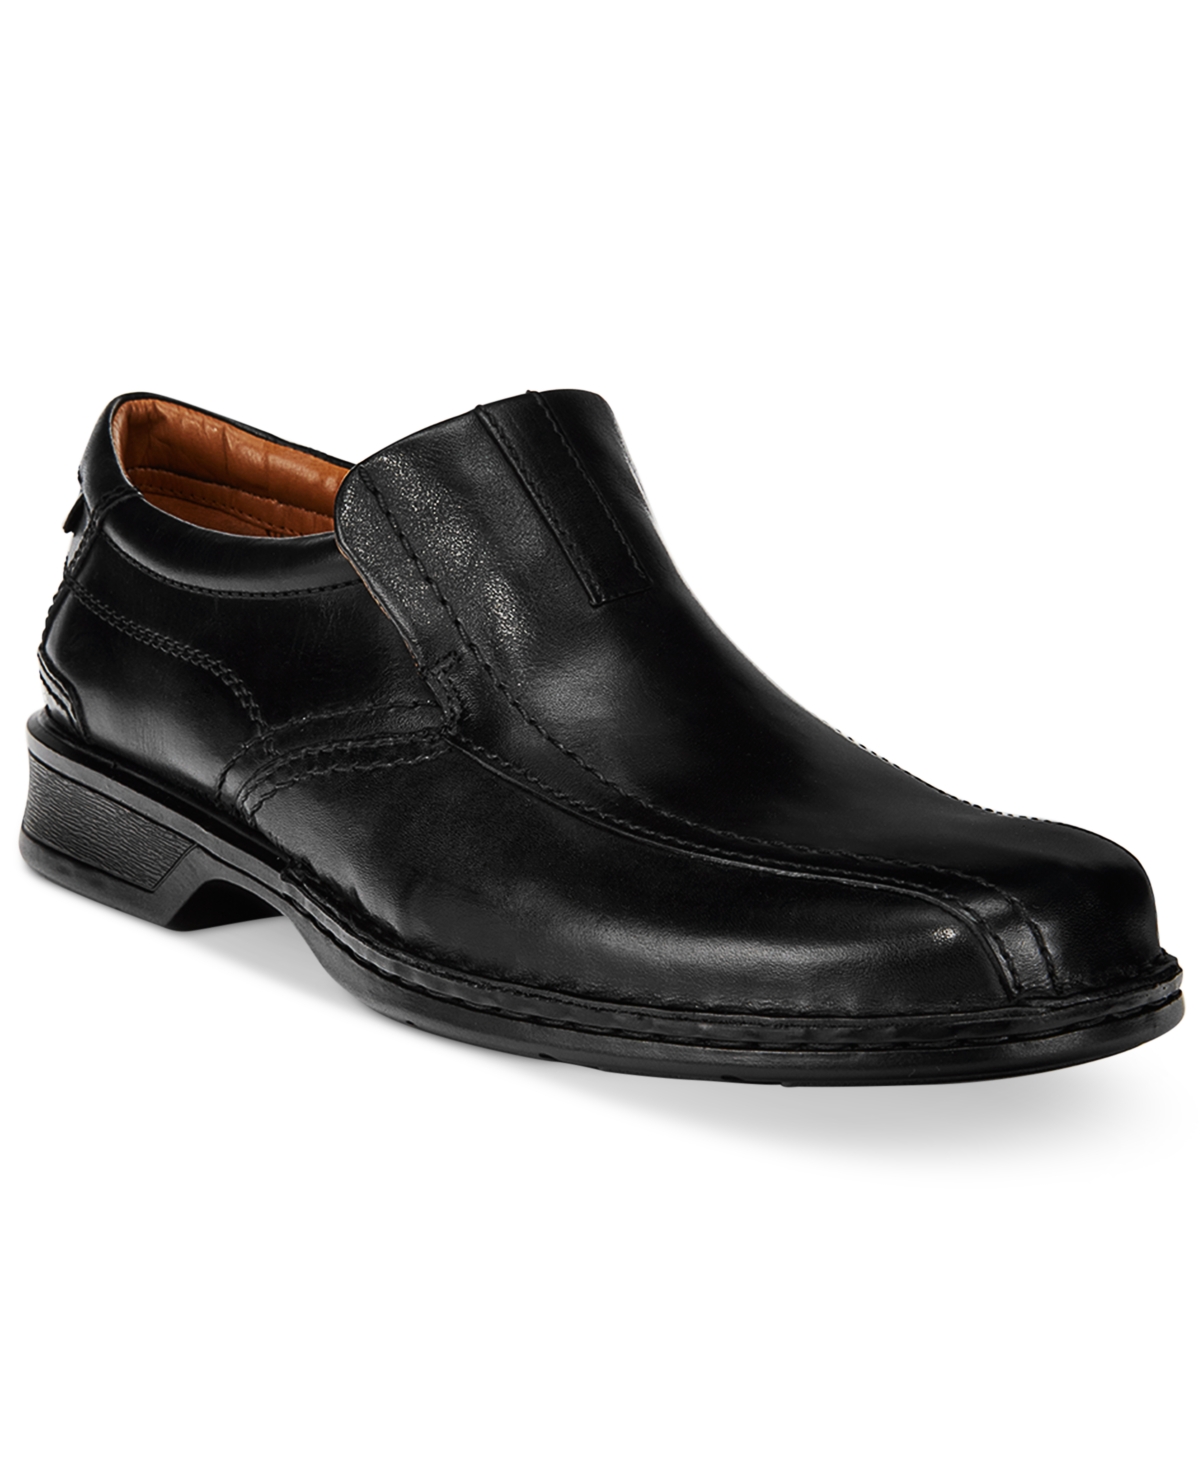 Men's Escalade Step Loafer - Black Leather